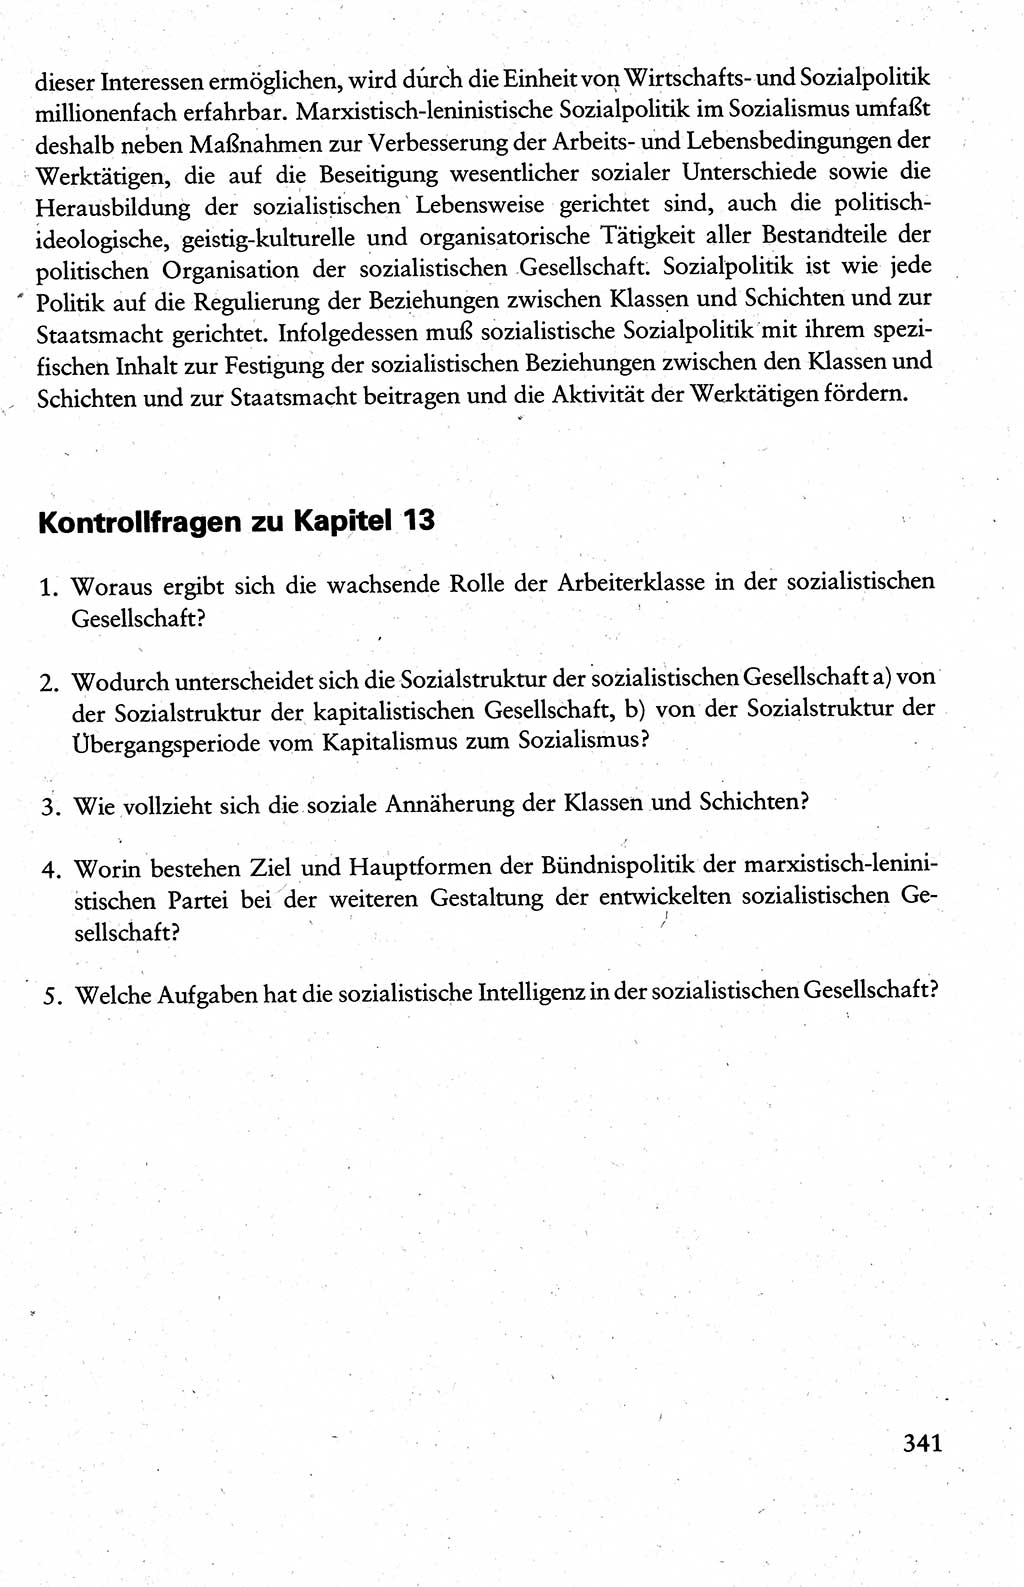 Wissenschaftlicher Kommunismus [Deutsche Demokratische Republik (DDR)], Lehrbuch für das marxistisch-leninistische Grundlagenstudium 1983, Seite 341 (Wiss. Komm. DDR Lb. 1983, S. 341)